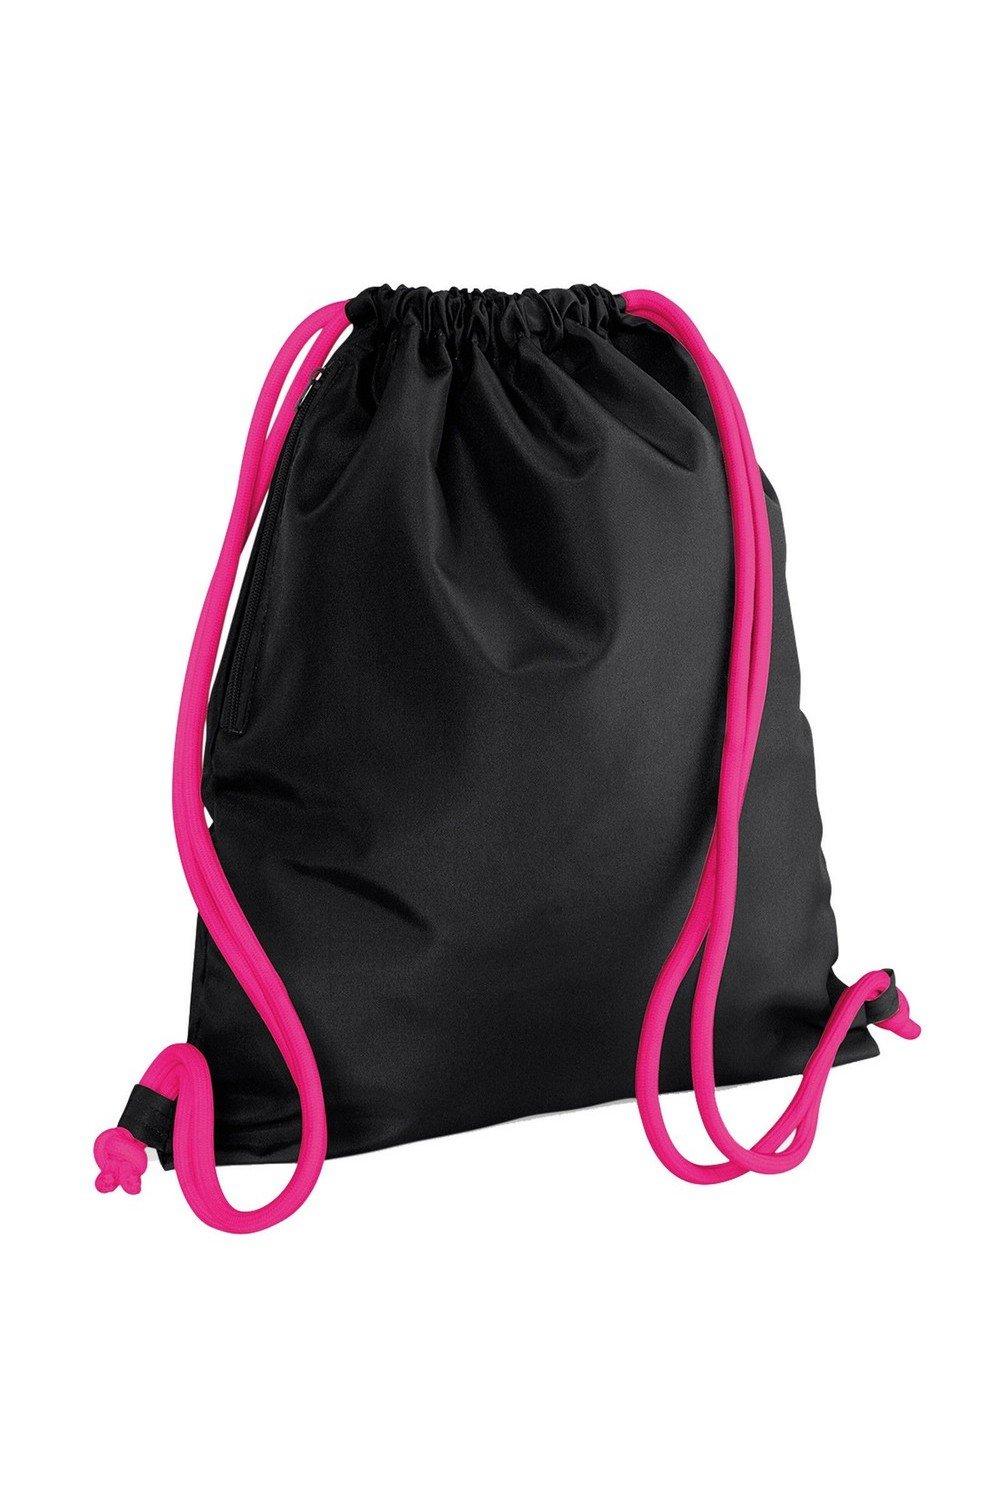 Сумка Icon на шнурке / Gymsac Bagbase, черный сумка urban gymsac на шнурке sol s черный